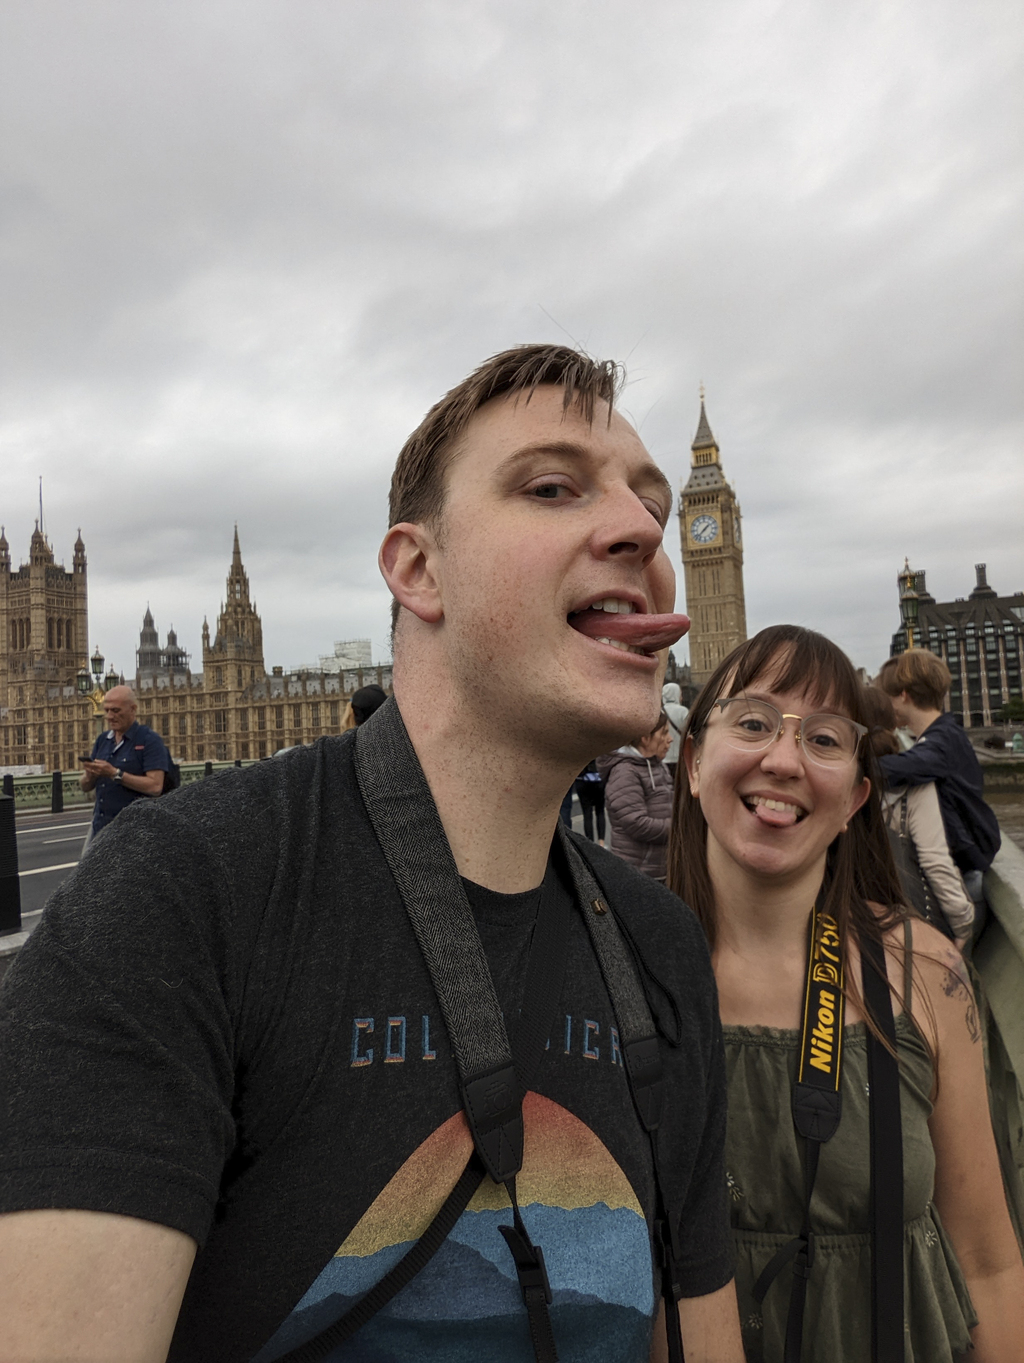 Licking Big Ben